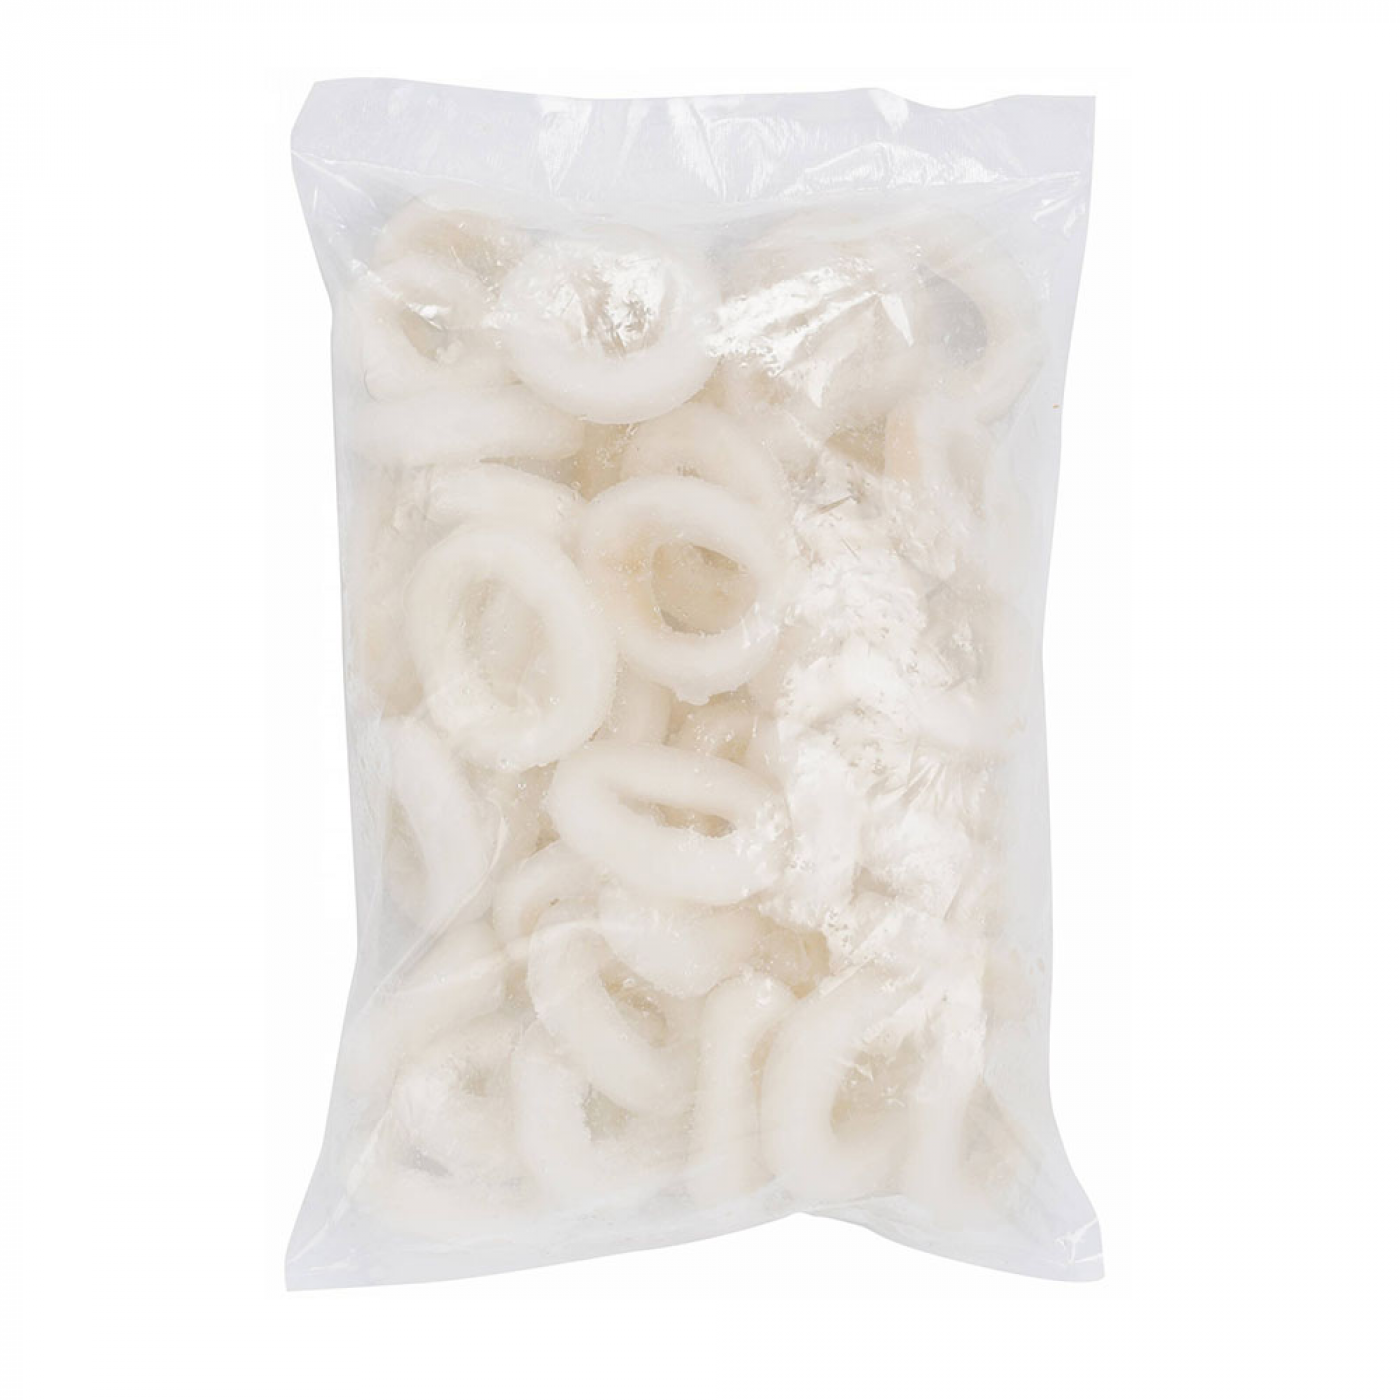 Frozen Squid Ring 1KG White (Sotong Ring Putih)